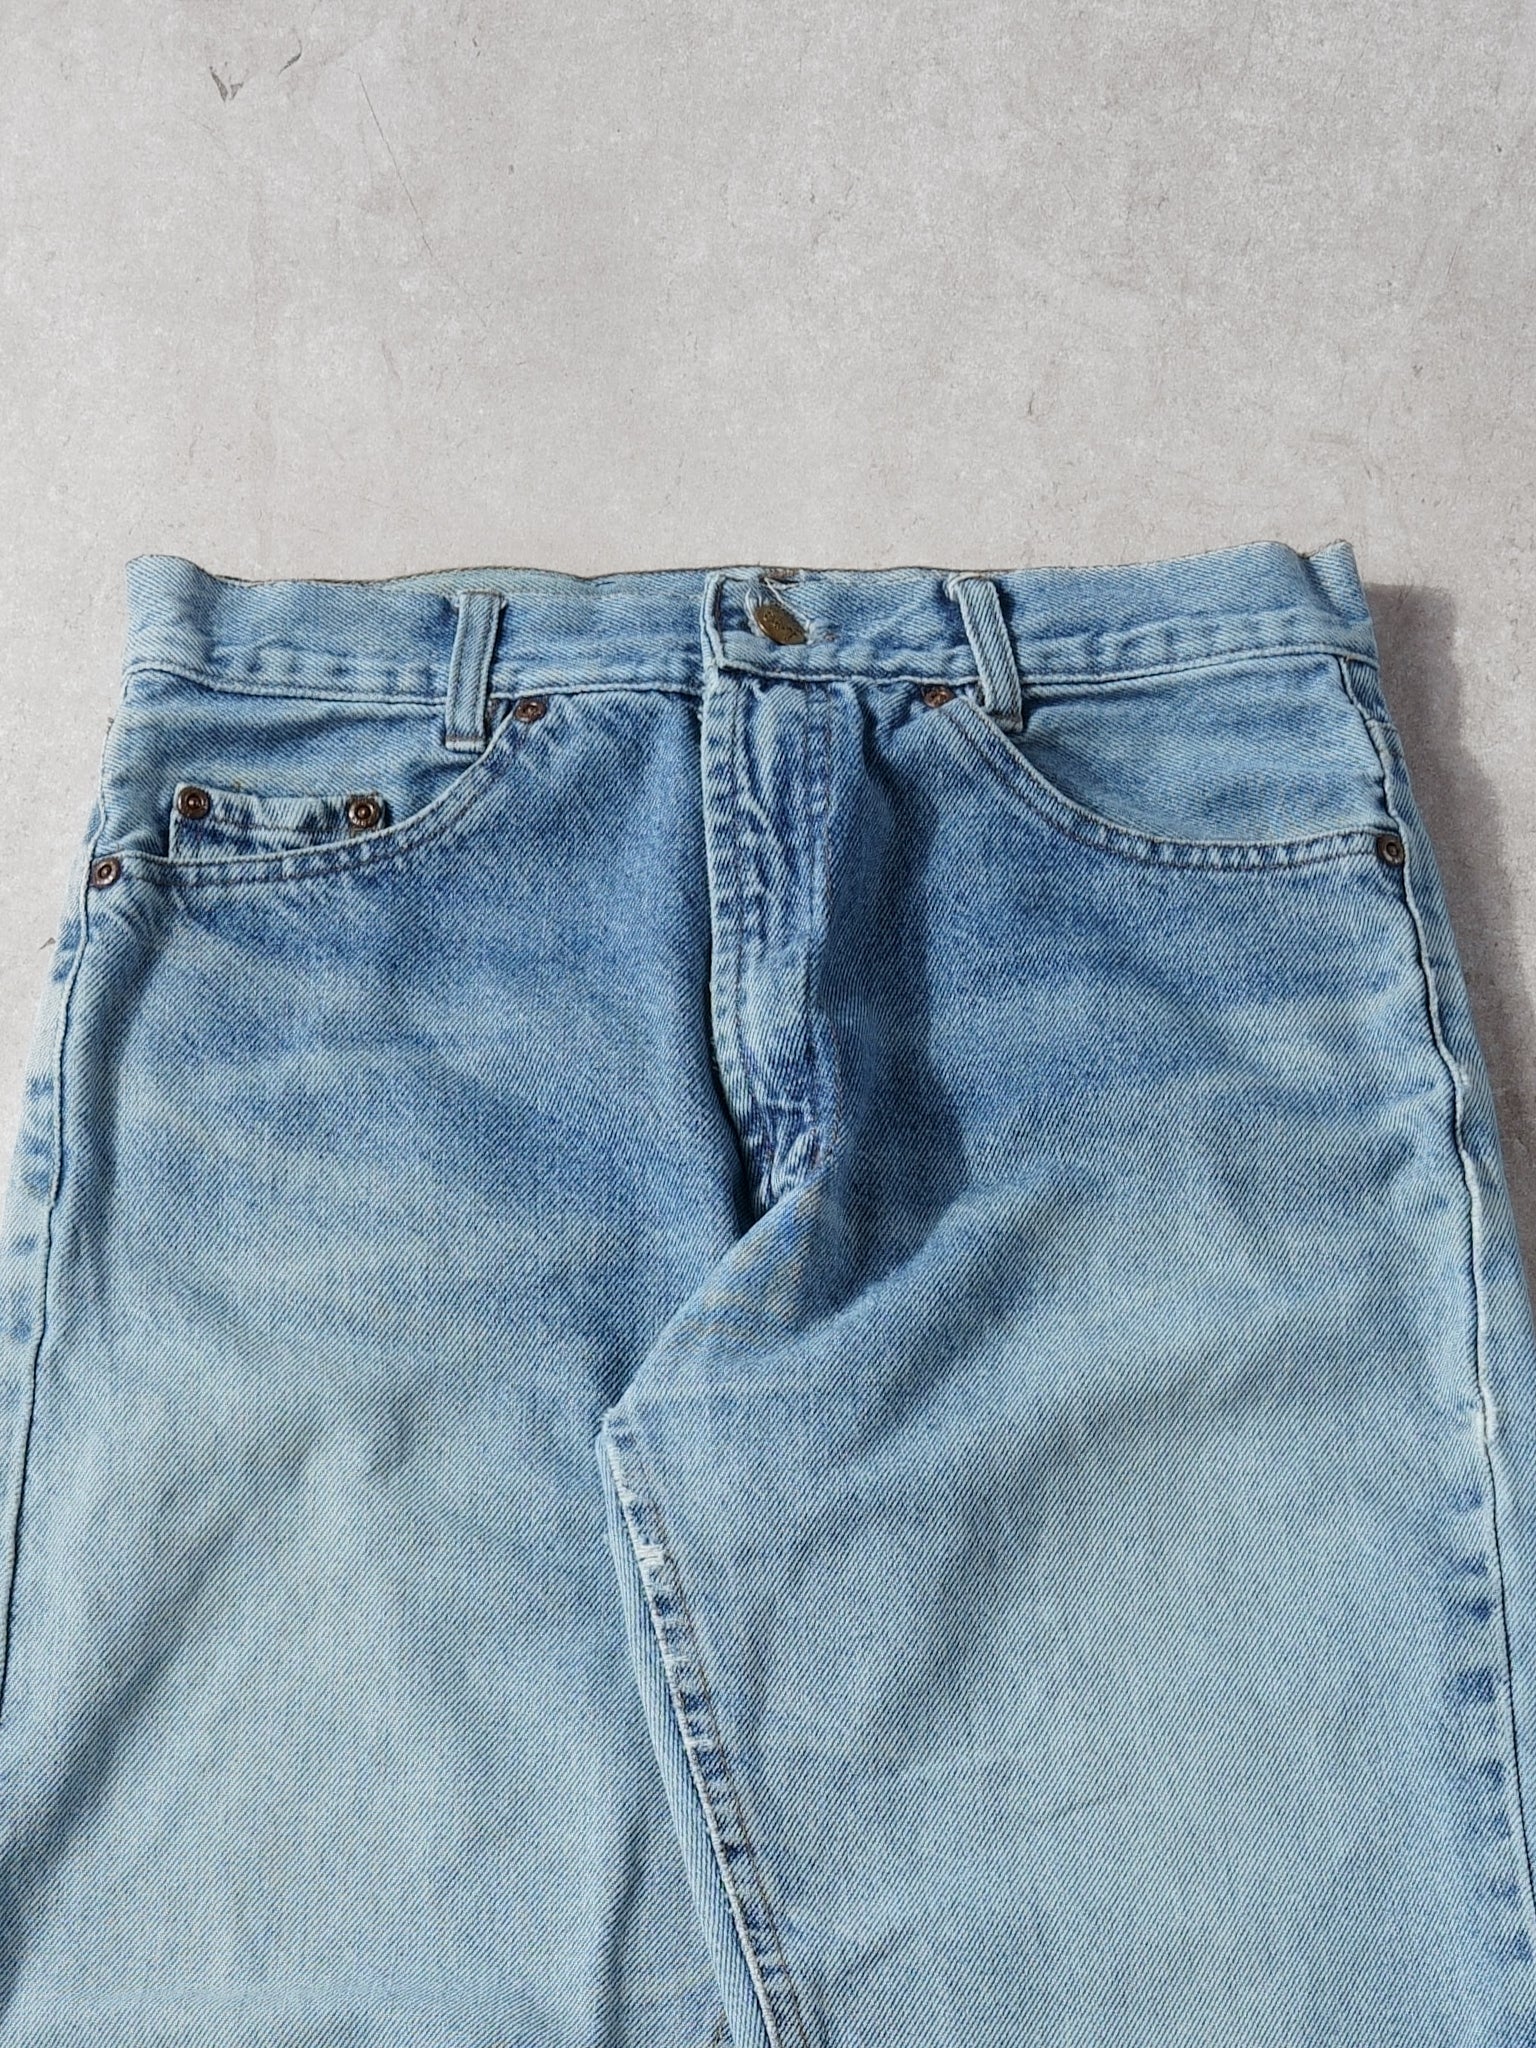 Vintage 90s Light Washed Blue Lee Denim Jeans (28x28)